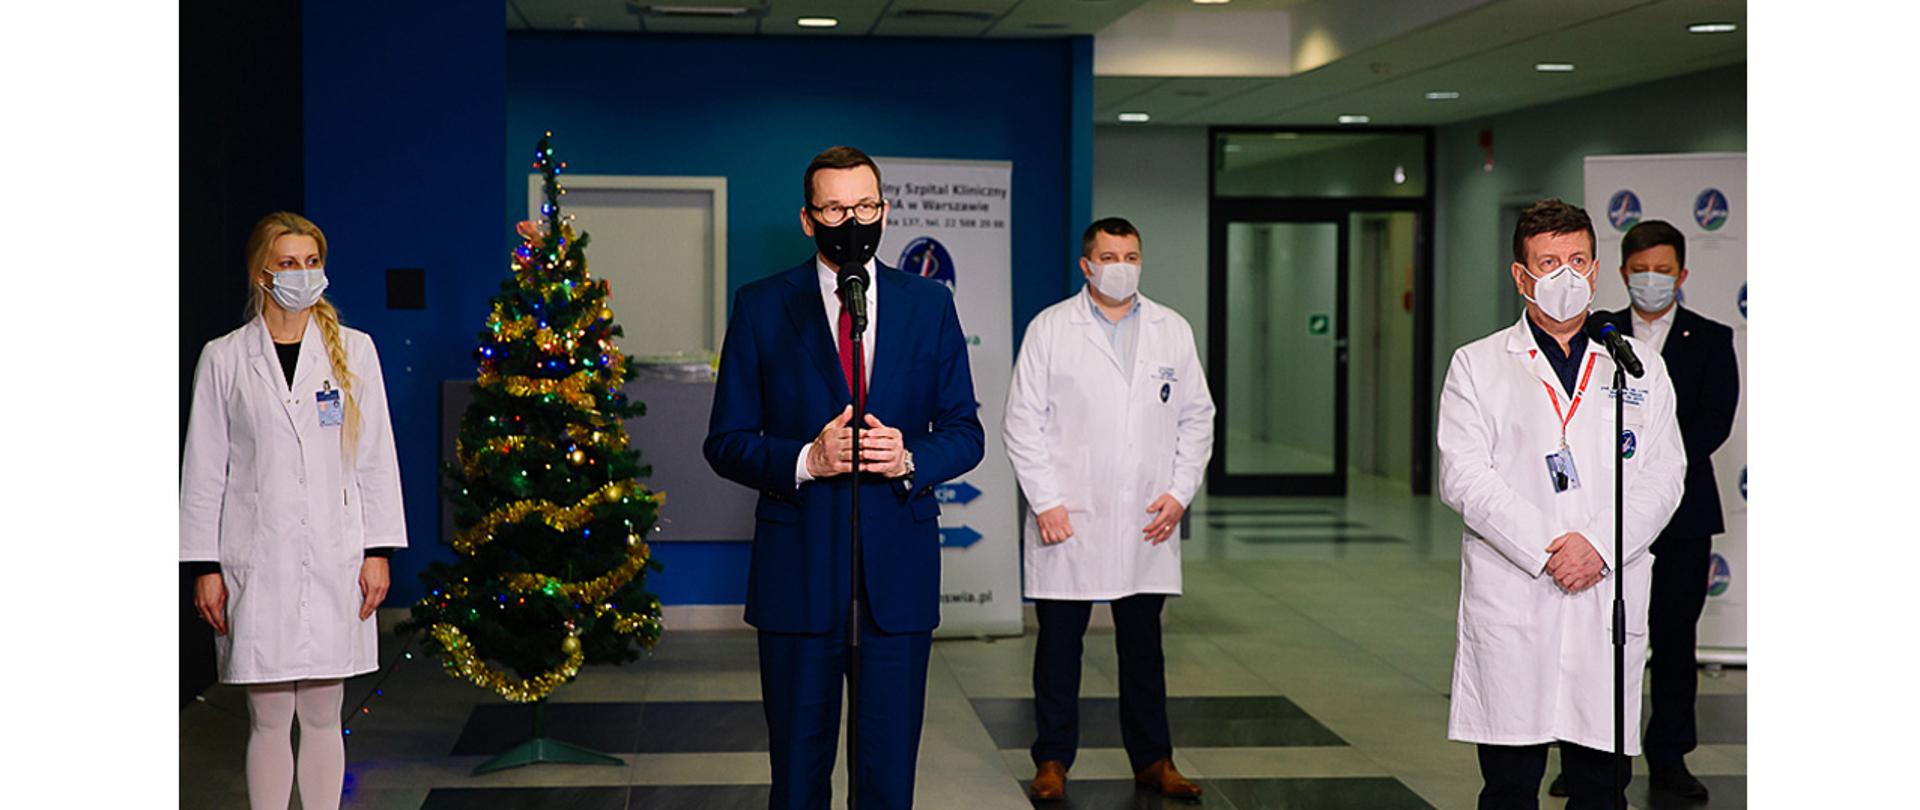 Na zdjęciu widać stojącego przed mikrofonem i przemawiającego premiera Mateusza Morawieckiego. Obok stoi przy mikrofonie dyrektor szpitala MSWiA w Warszawie prof. Waldemar Wierzba. W tle widać dwie osoby z personelu medycznego.